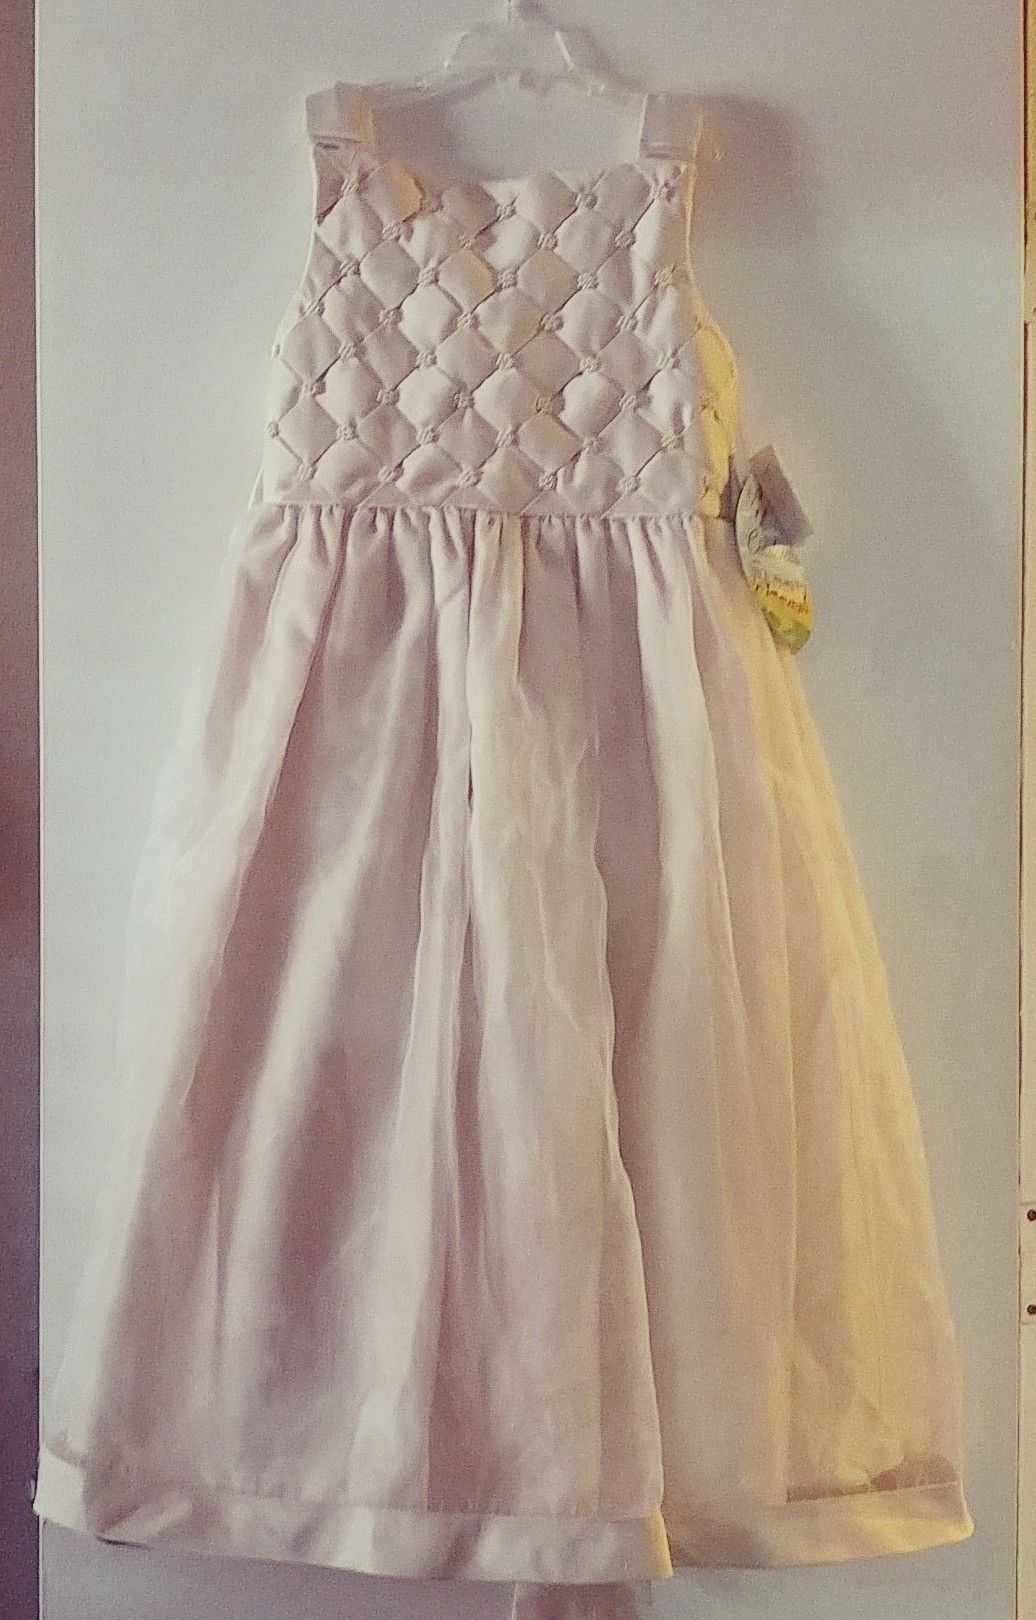 Ivory flower girl dress size 12 (brand new)